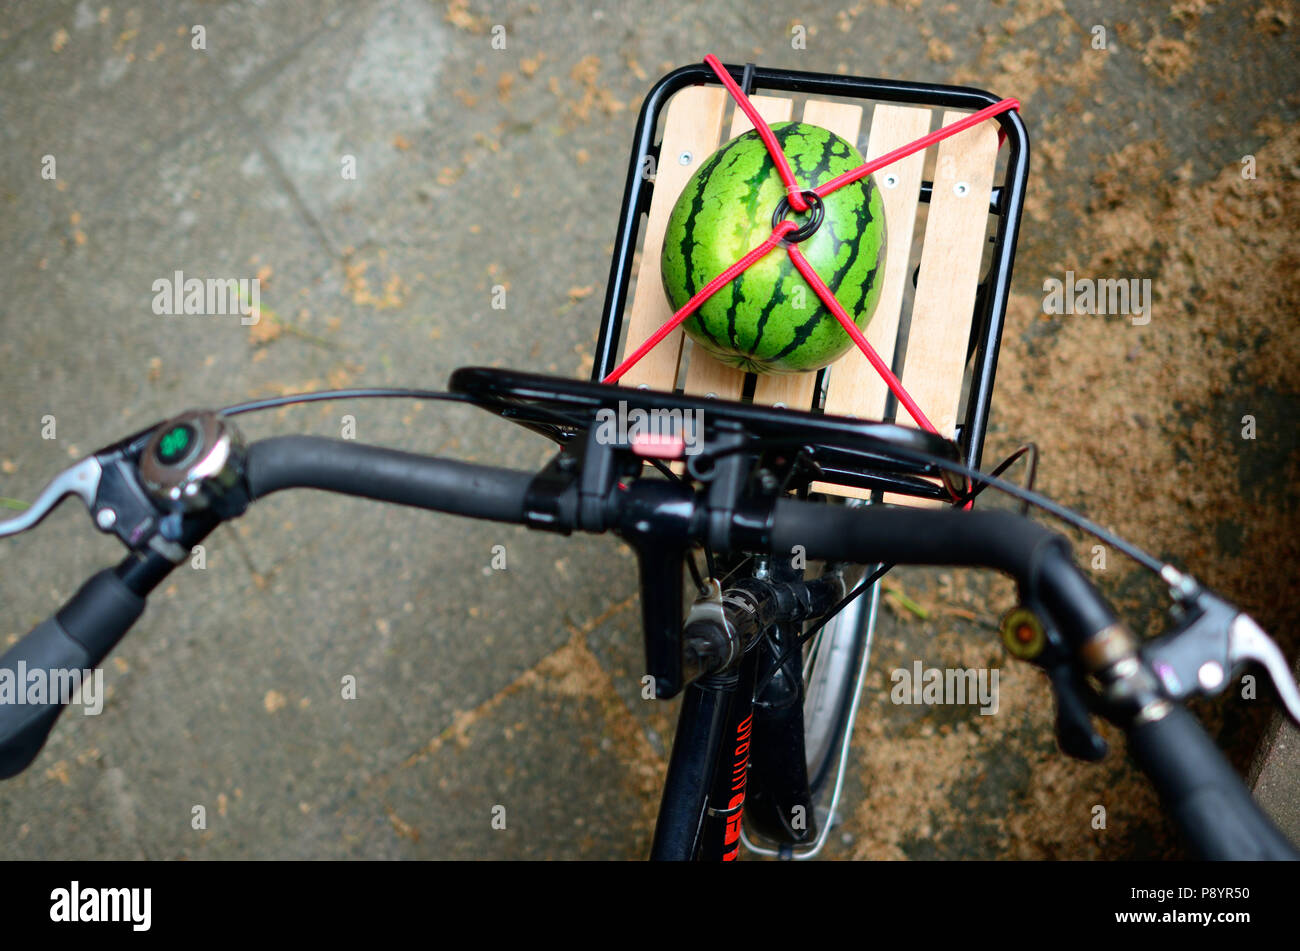 Besten Wassermelone Foto, Wassermelone auf dem Fahrrad, organische, biologische Ernährung Lifestyle Lifestyle Stockfoto